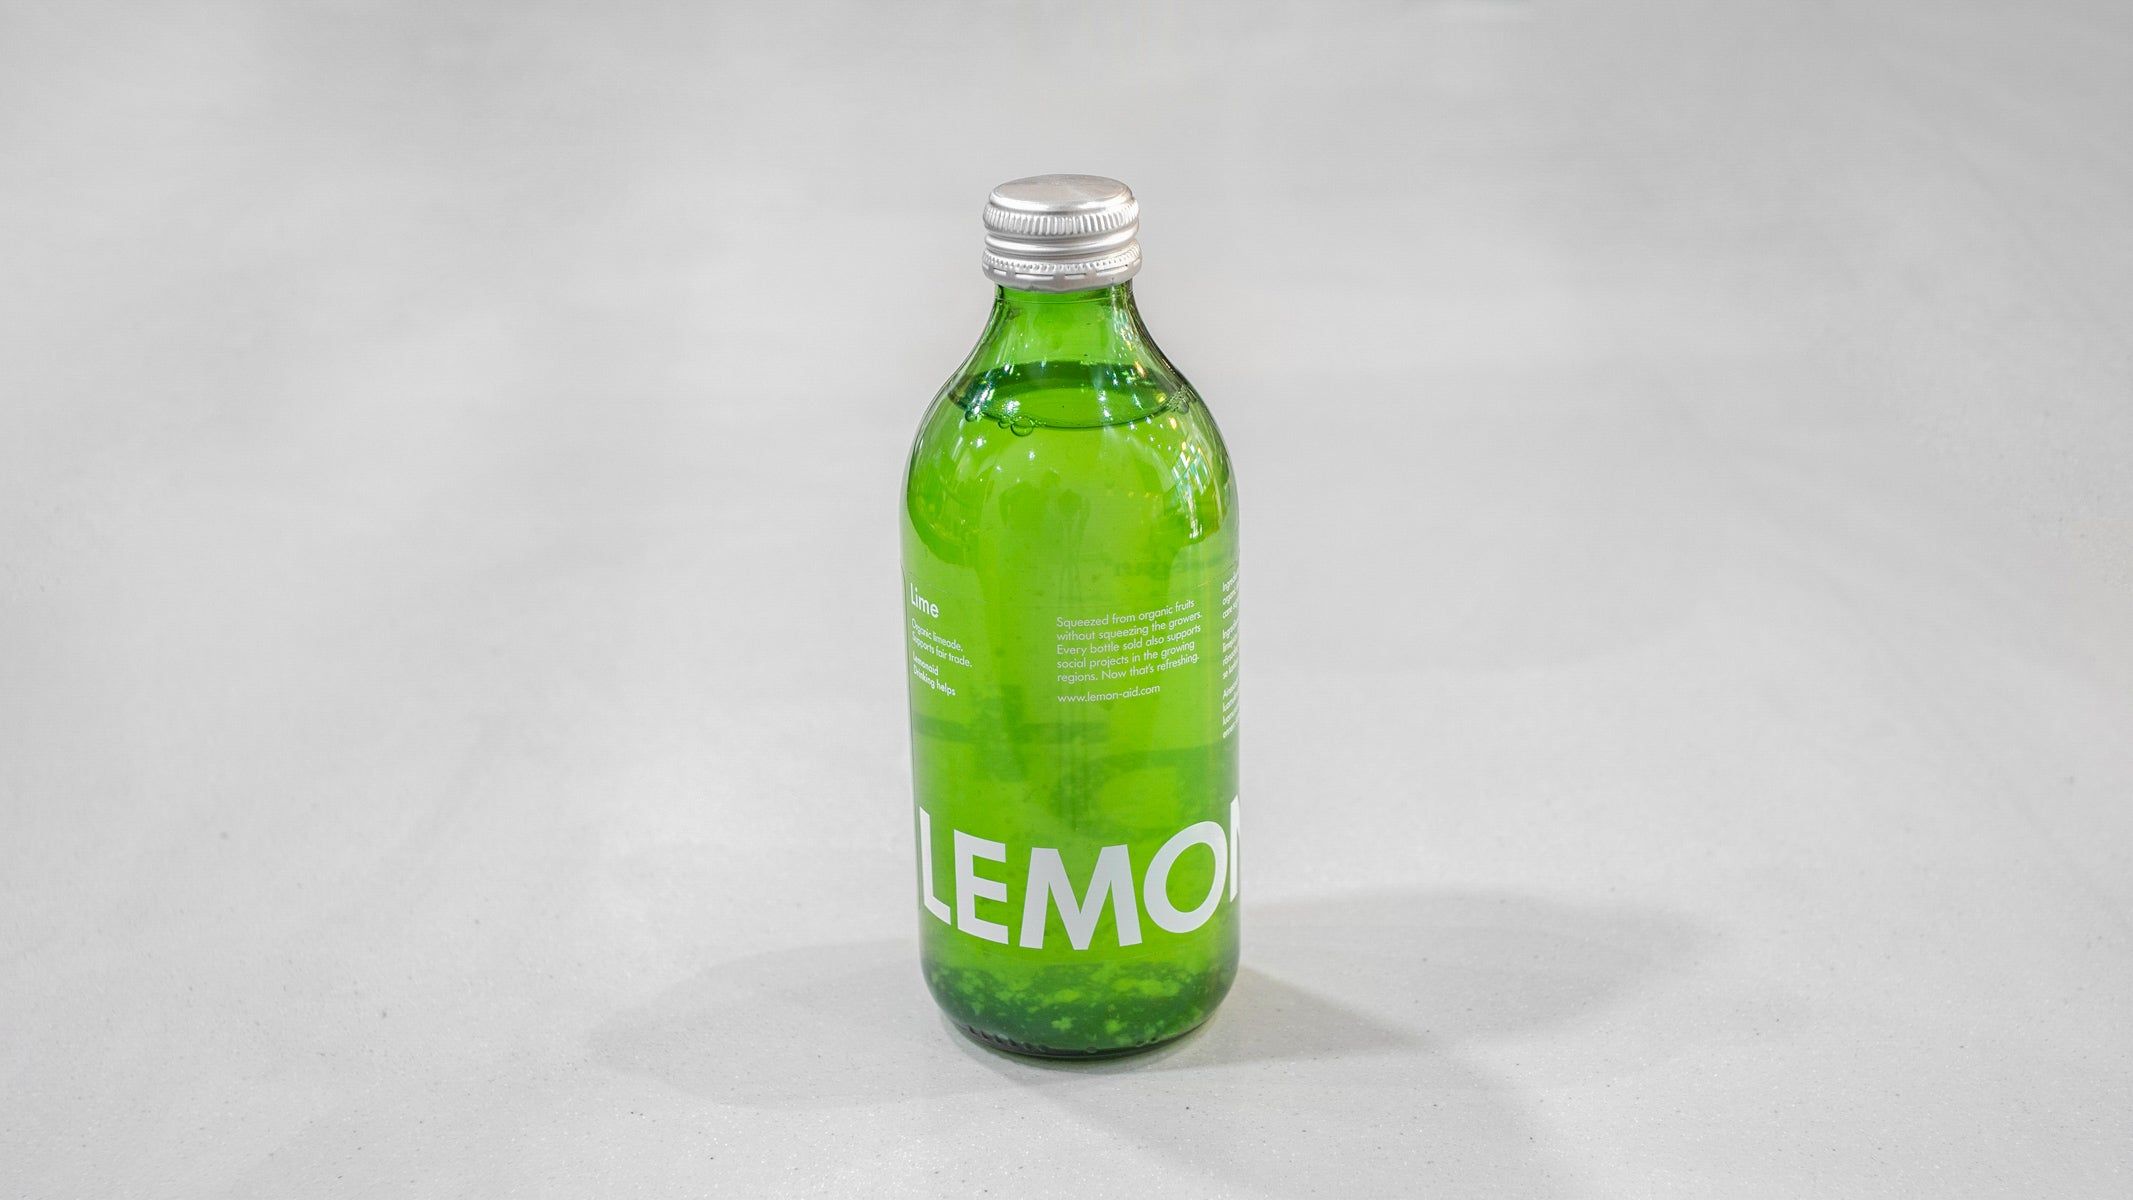 Lemonaid Lime Organic